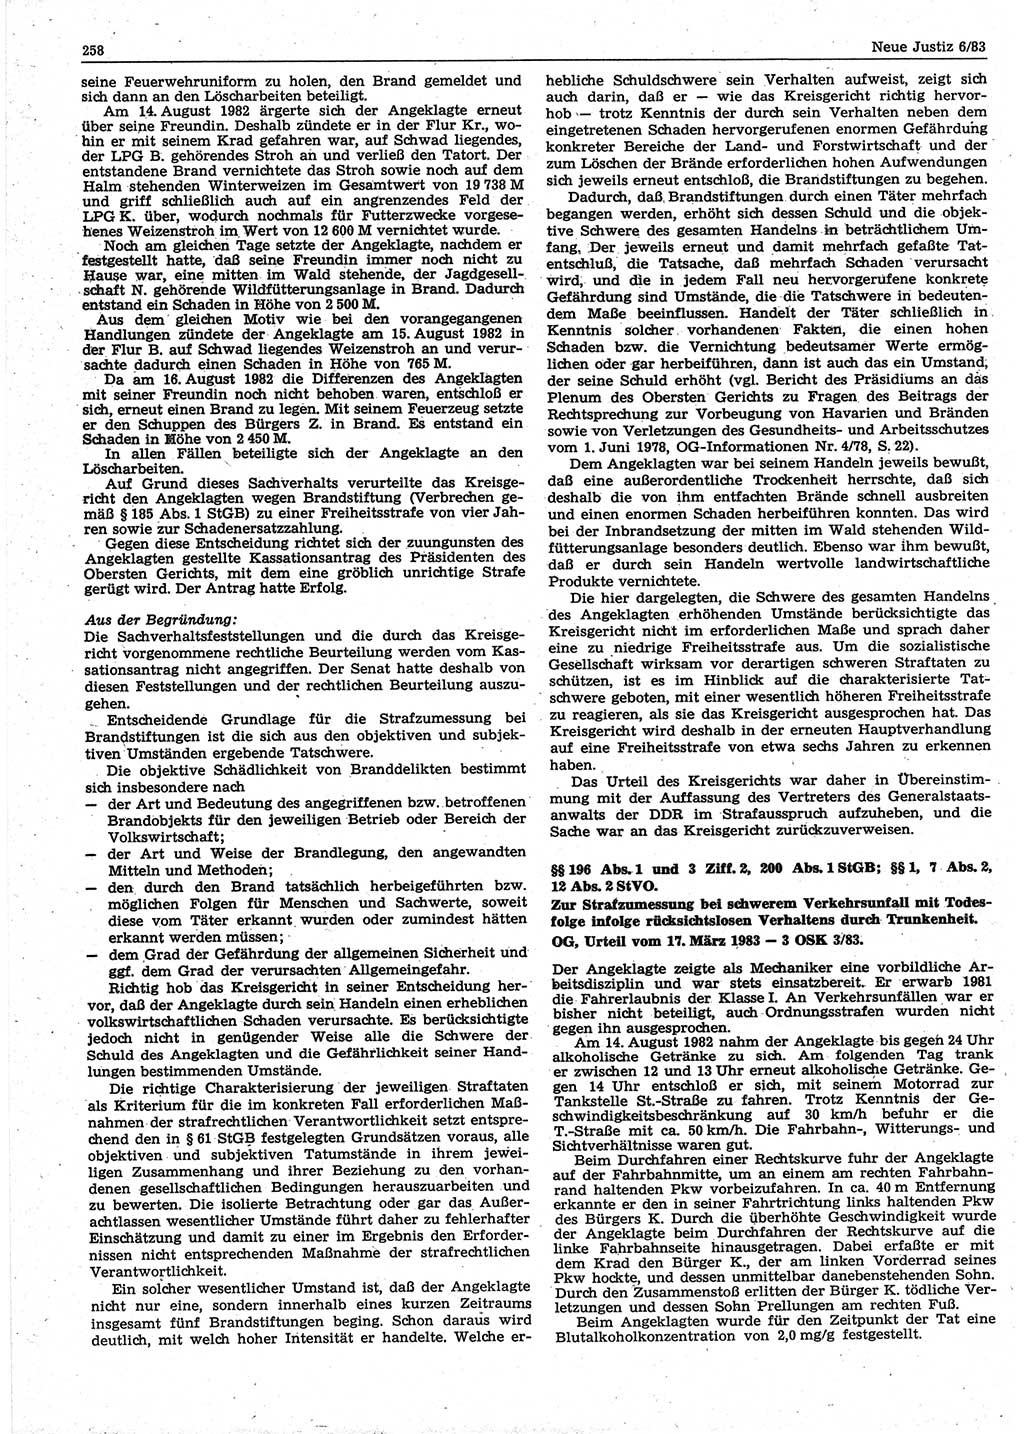 Neue Justiz (NJ), Zeitschrift für sozialistisches Recht und Gesetzlichkeit [Deutsche Demokratische Republik (DDR)], 37. Jahrgang 1983, Seite 258 (NJ DDR 1983, S. 258)